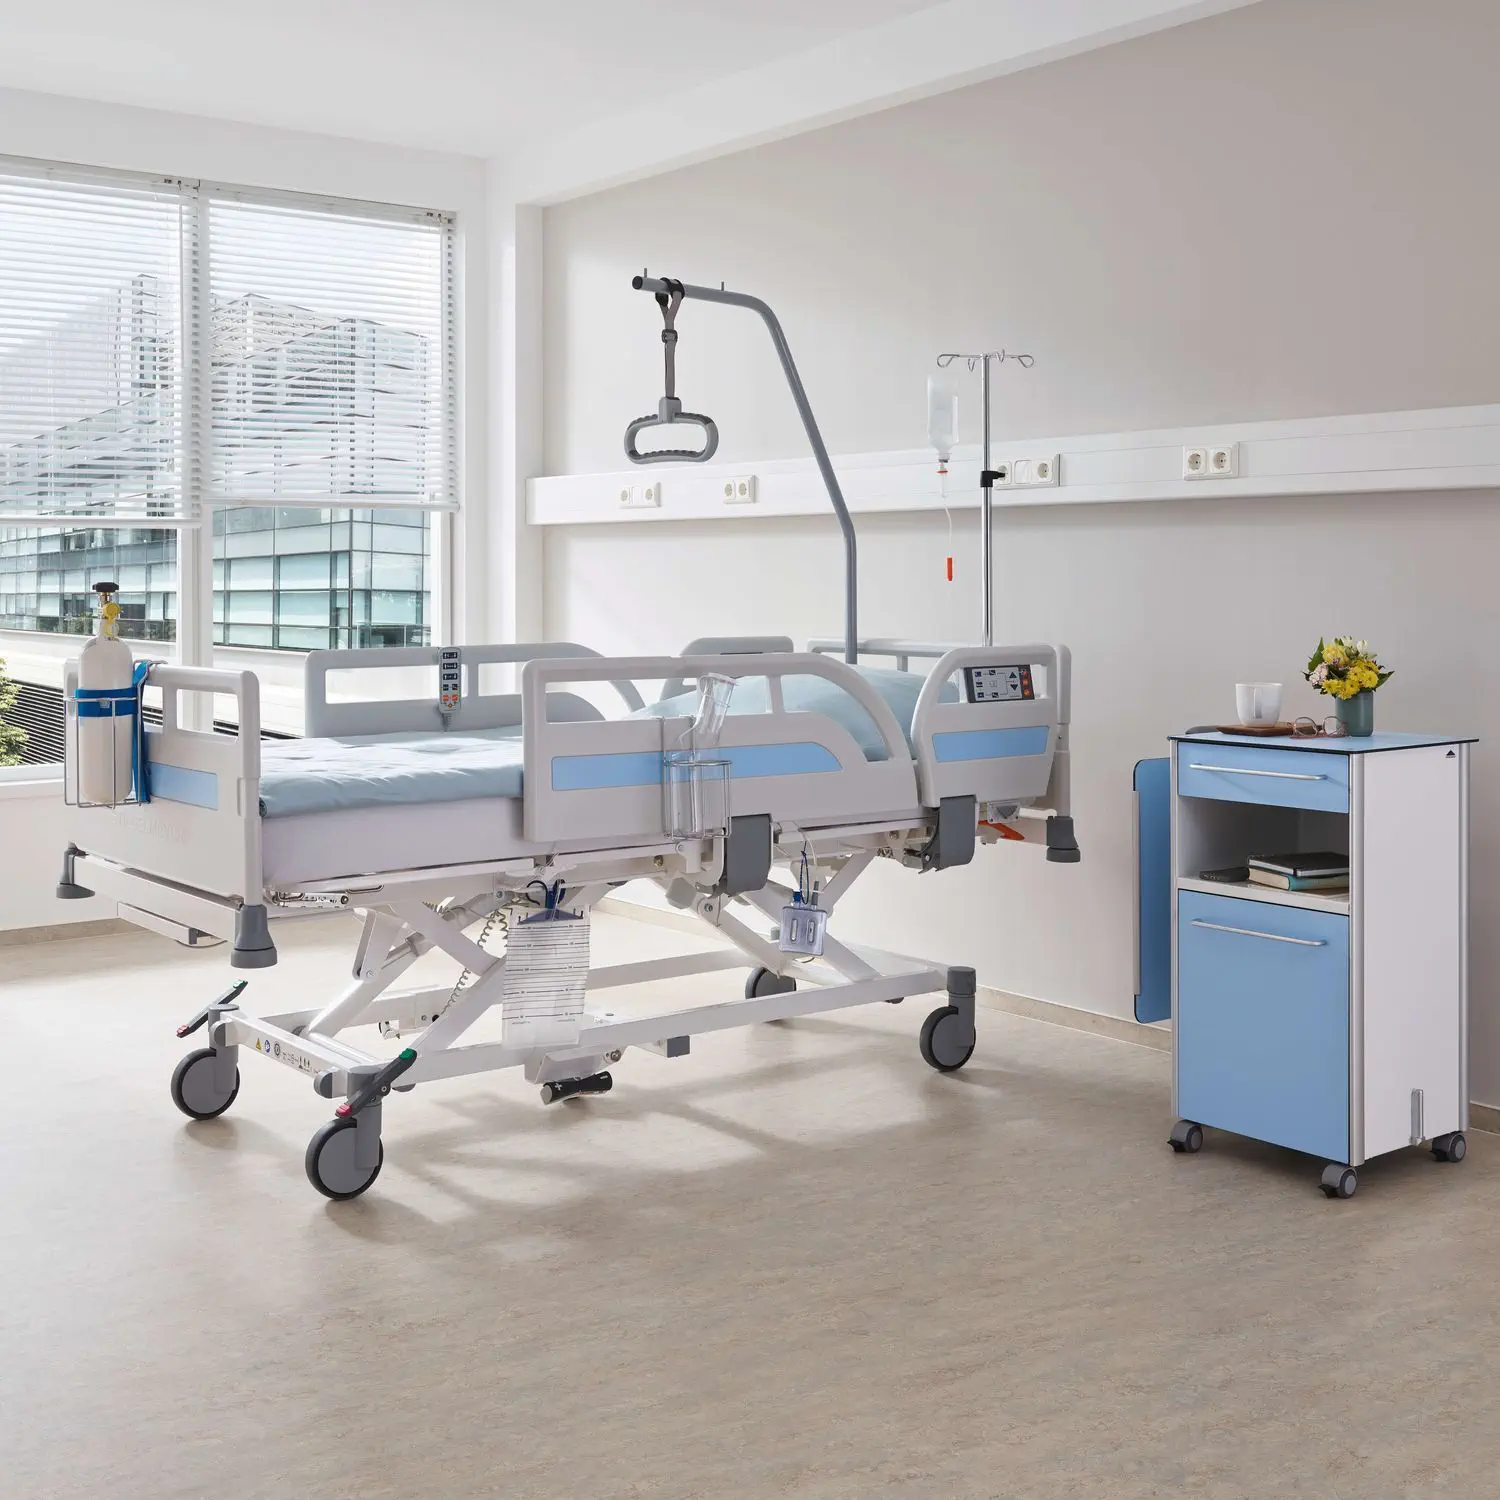 เตียงผู้ป่วยชนิดสามไกร์ปรับด้วยไฟฟ้าราวปีกนก พร้อมอุปกรณ์เสริมครบชุด  Hospital bed Evario one  Stiegelmeyer